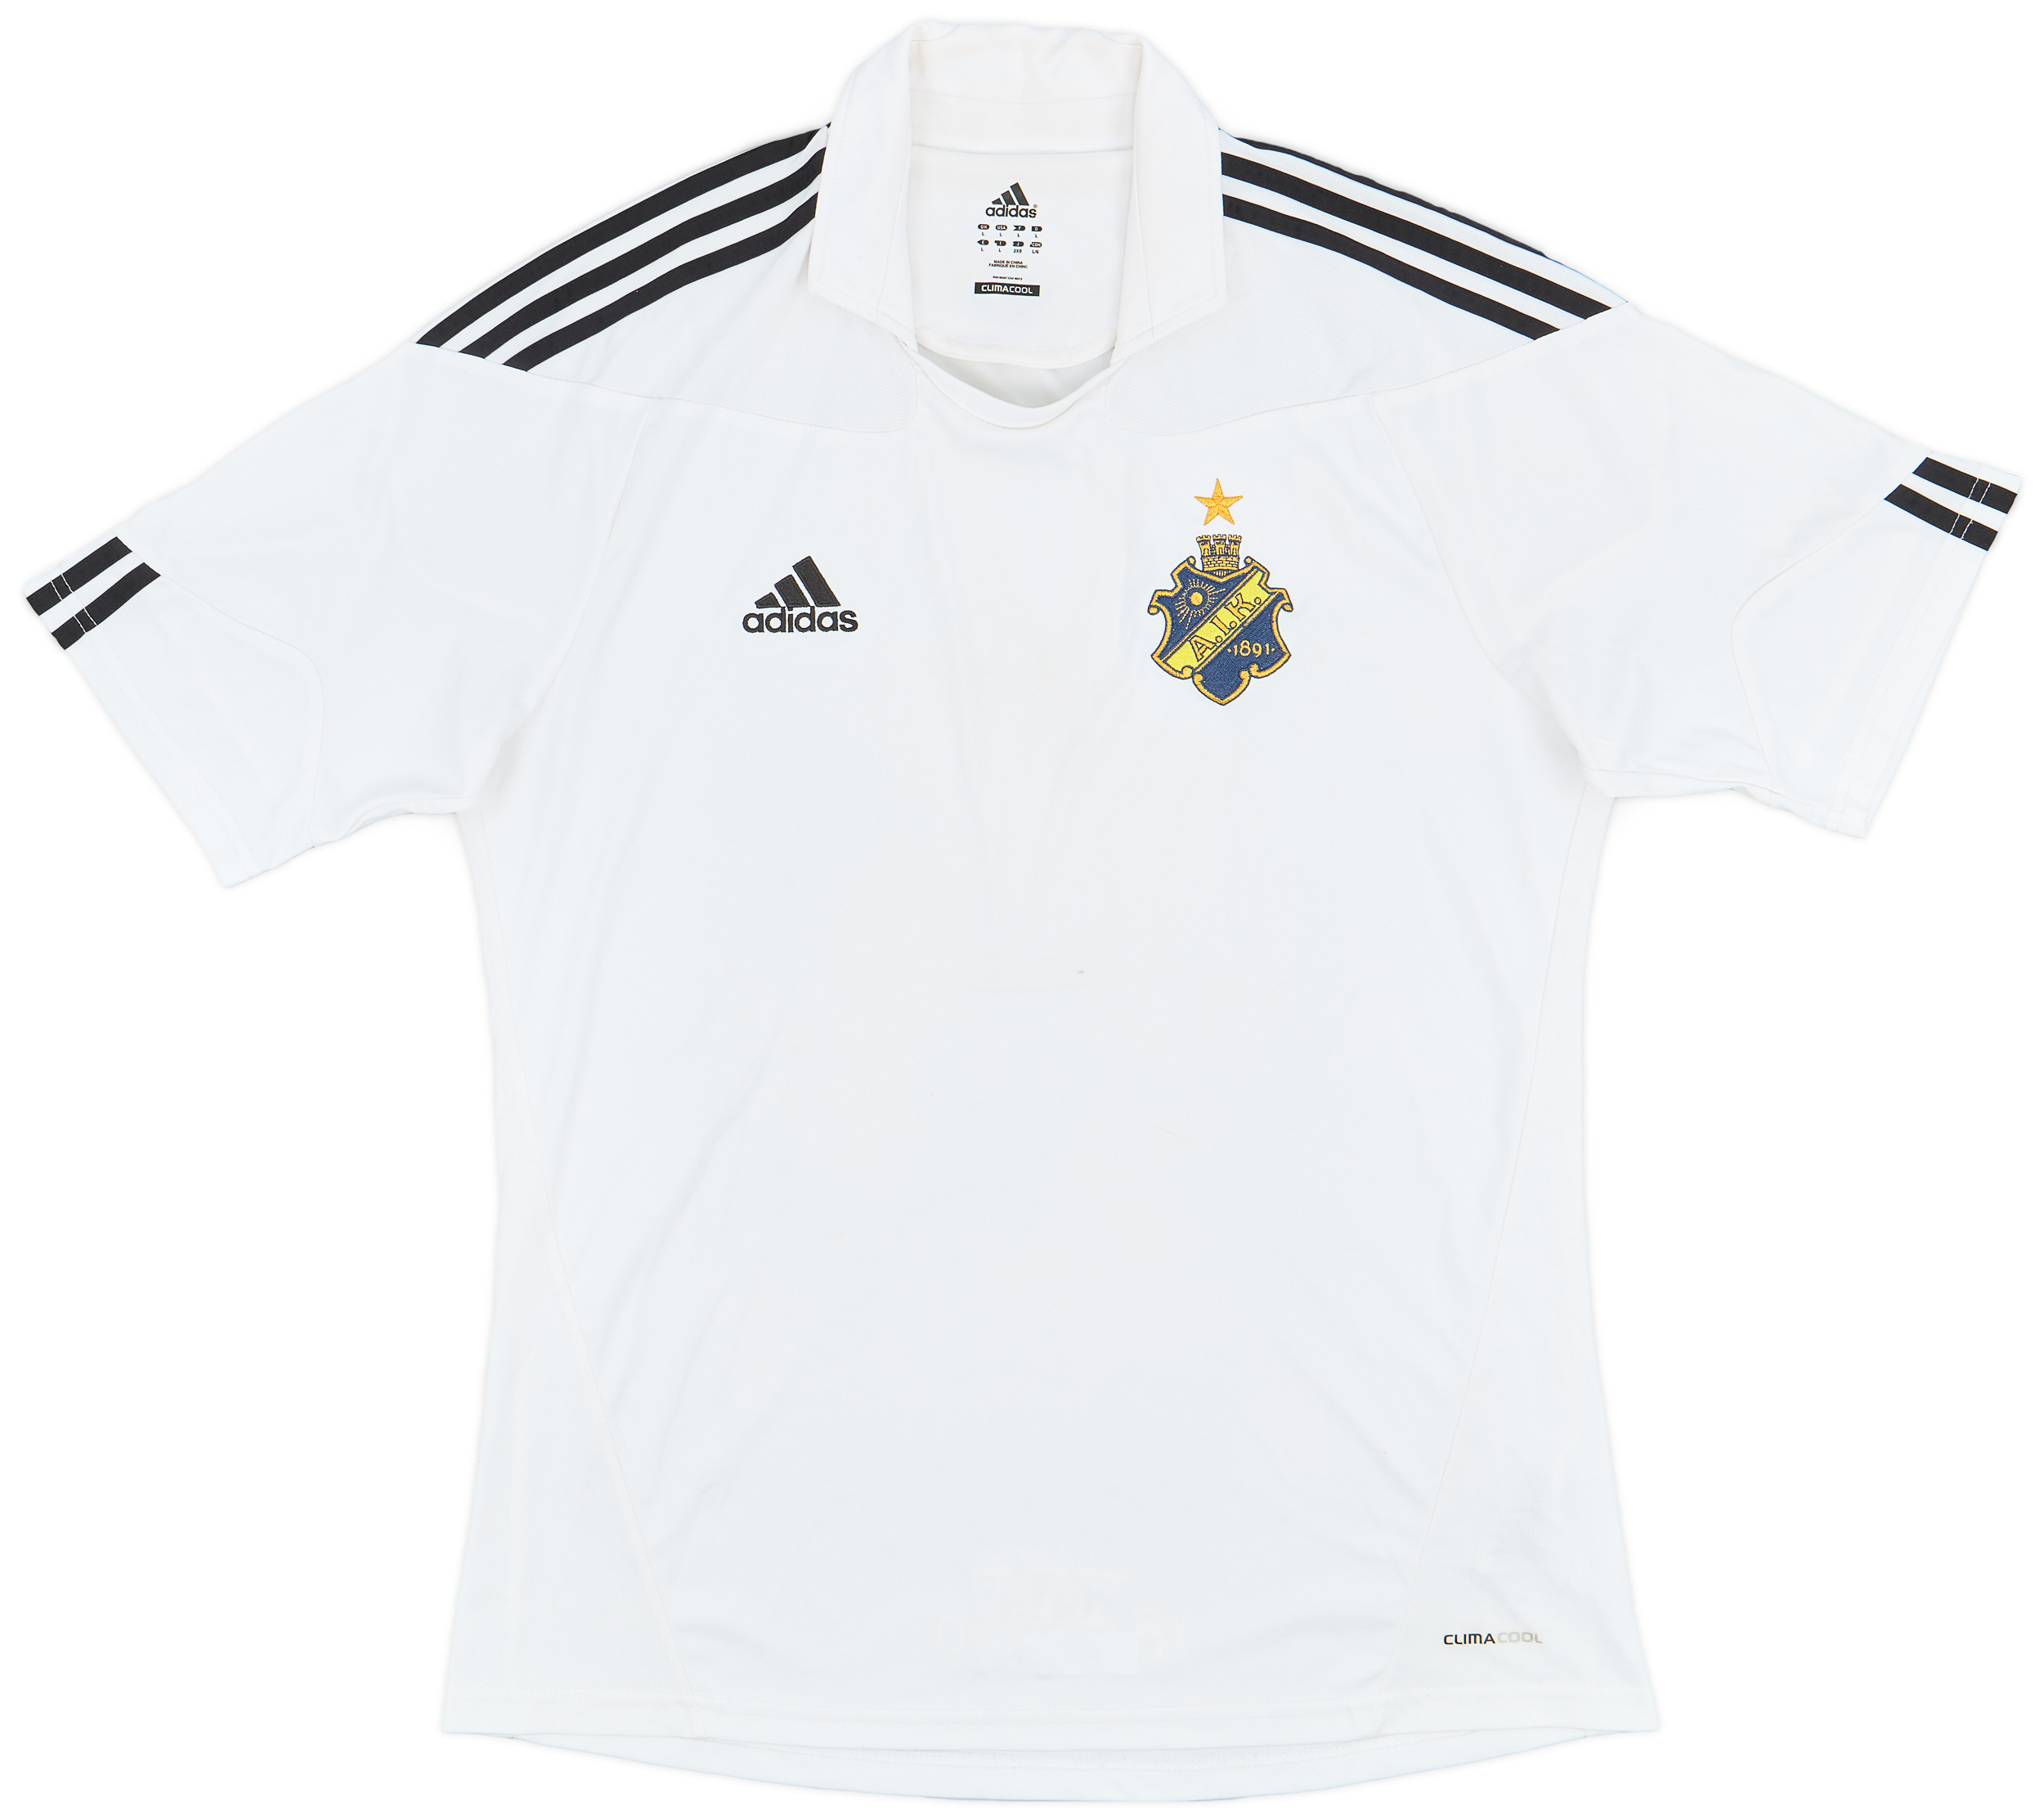 AIK Fotboll   Fora camisa (Original)